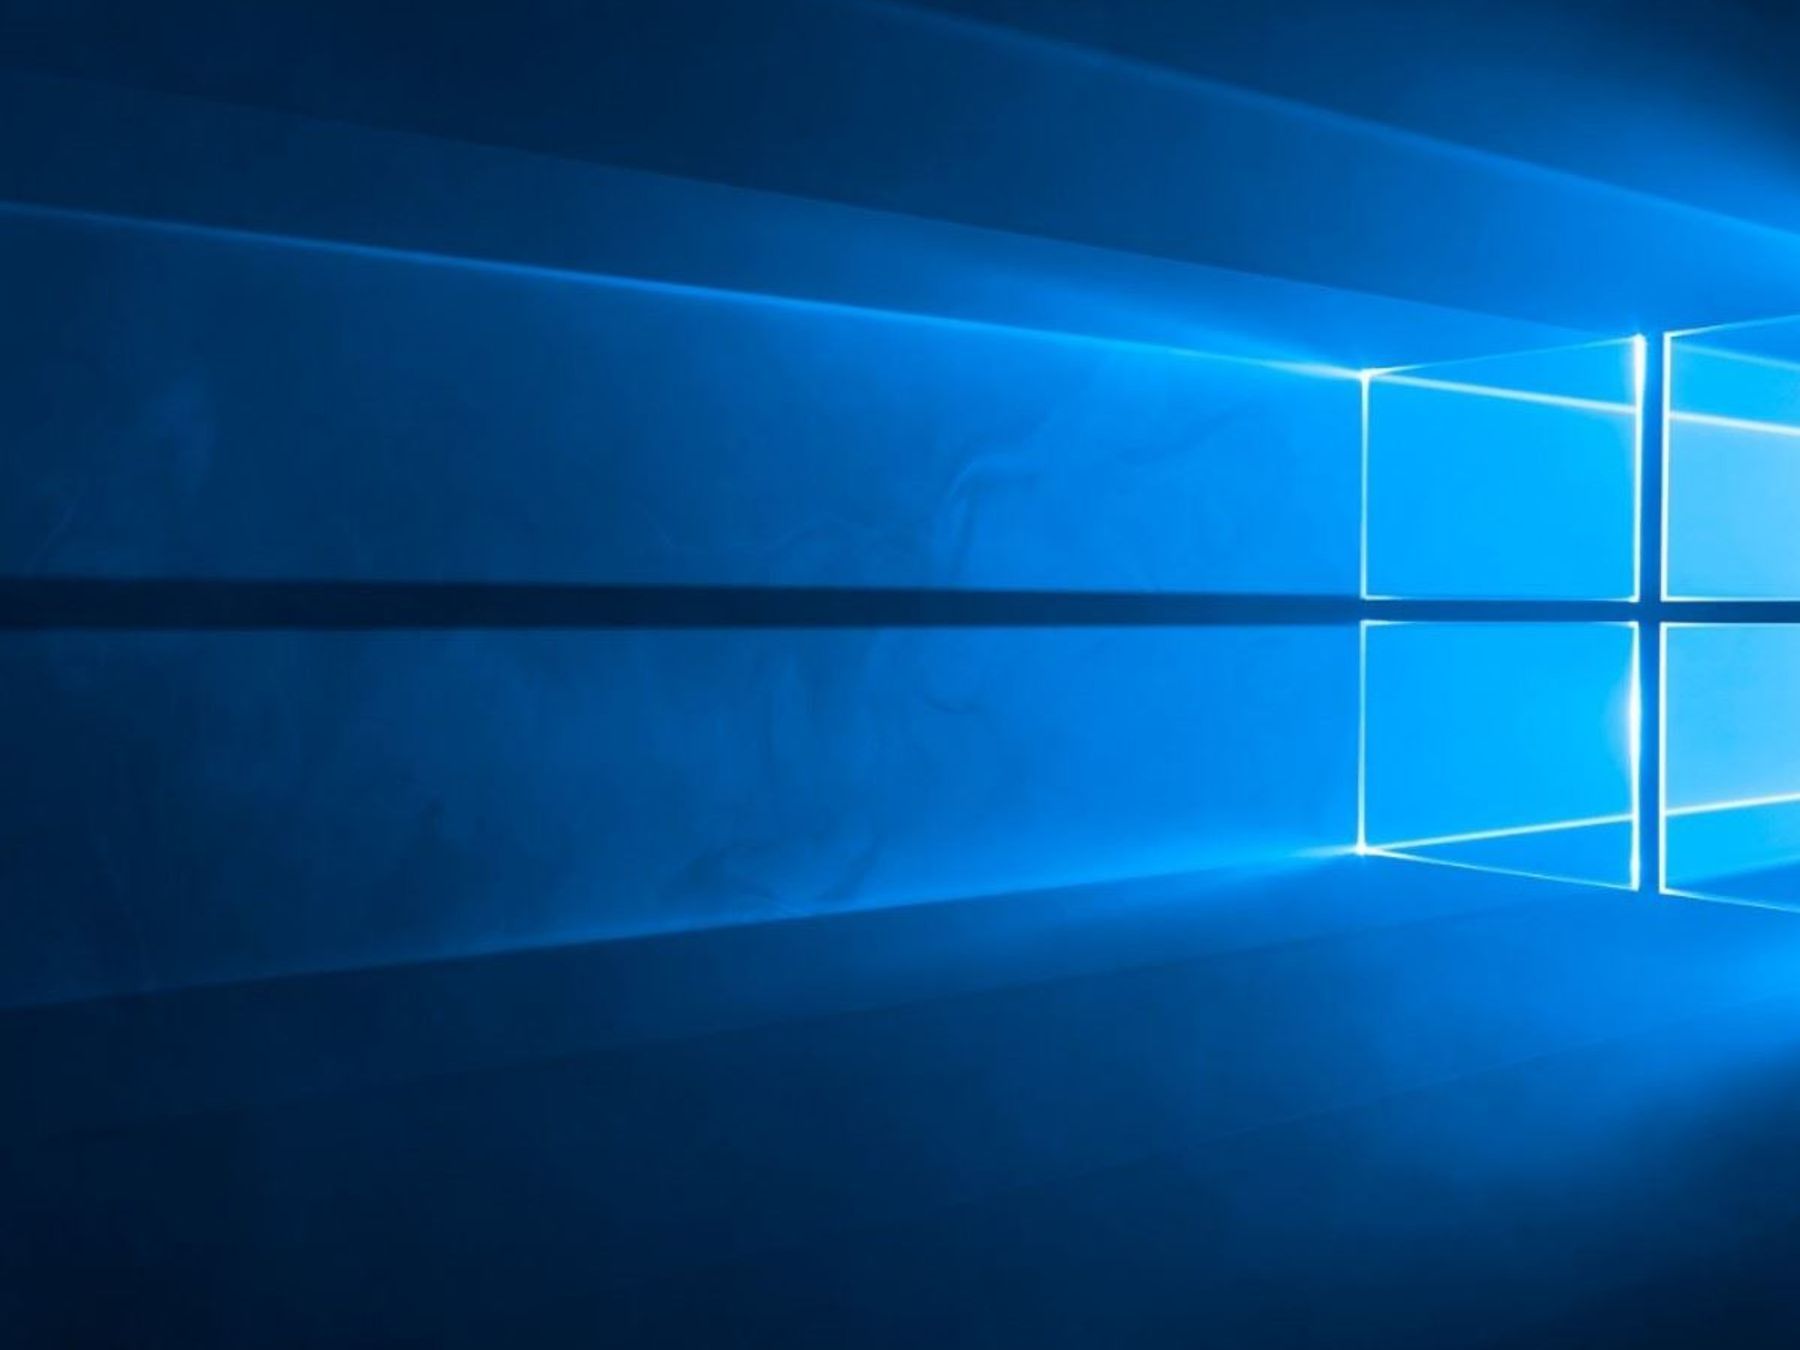  Windows Hintergrundbild 1800x1350. Windows 10: Das Fenster auf dem Startbildschirm gibt es wirklich